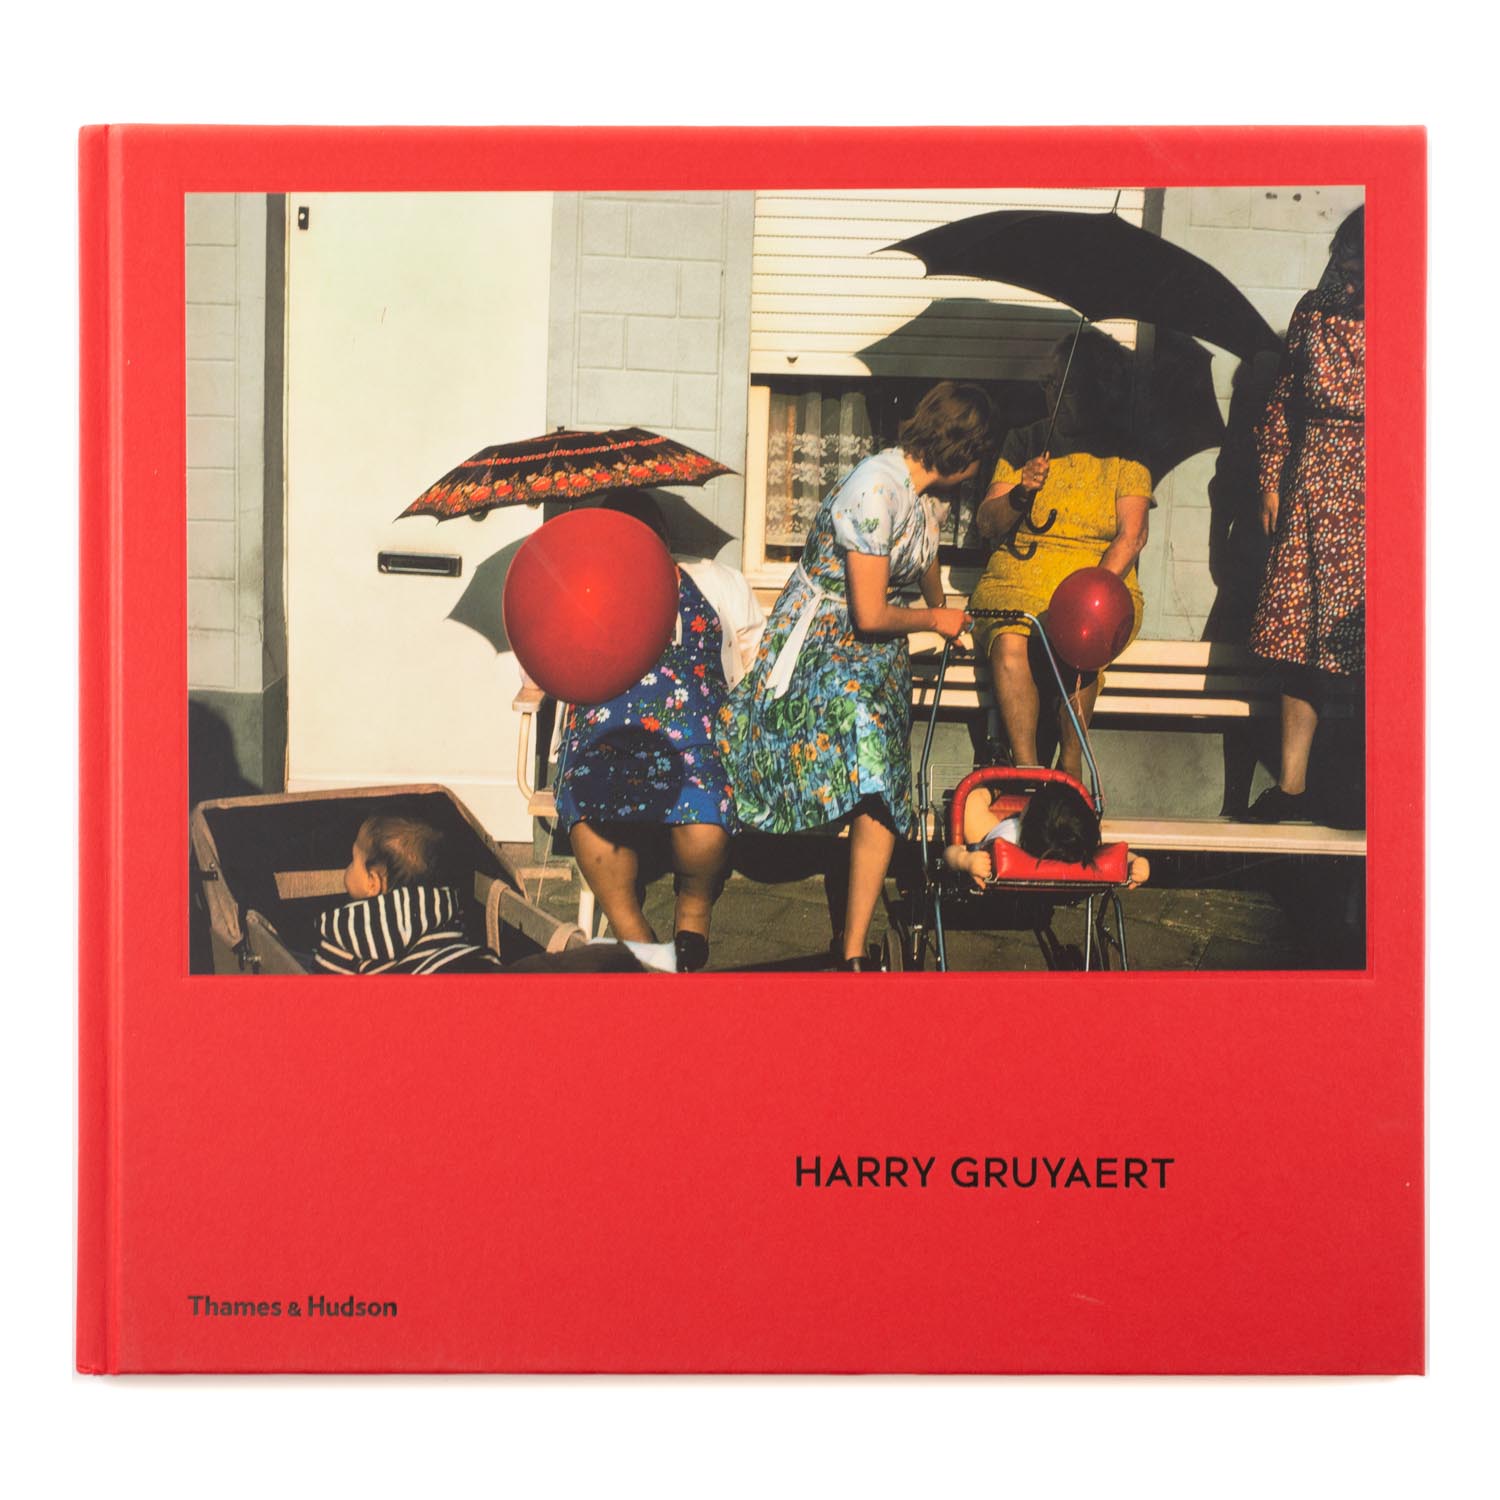 TVignette pour Harry Gruyaert par Thames & Hudson